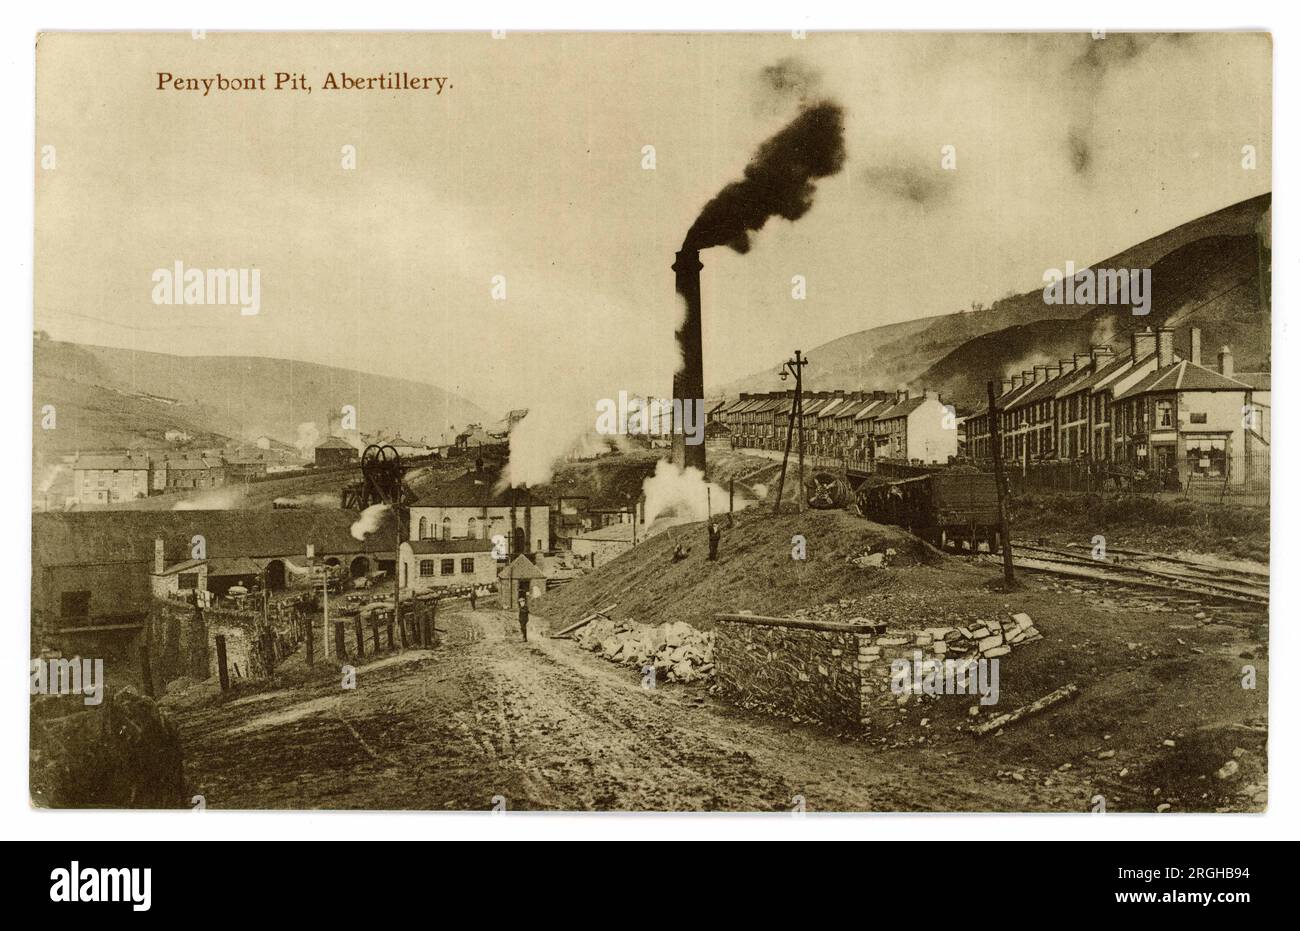 Cartolina originale dei primi anni '1900 del paesaggio minerario industriale gallese, che mostra camini fumanti a Penybont Pit, Abertillery, Monmouth, Galles del Sud, Regno Unito, circa 1910. Foto Stock